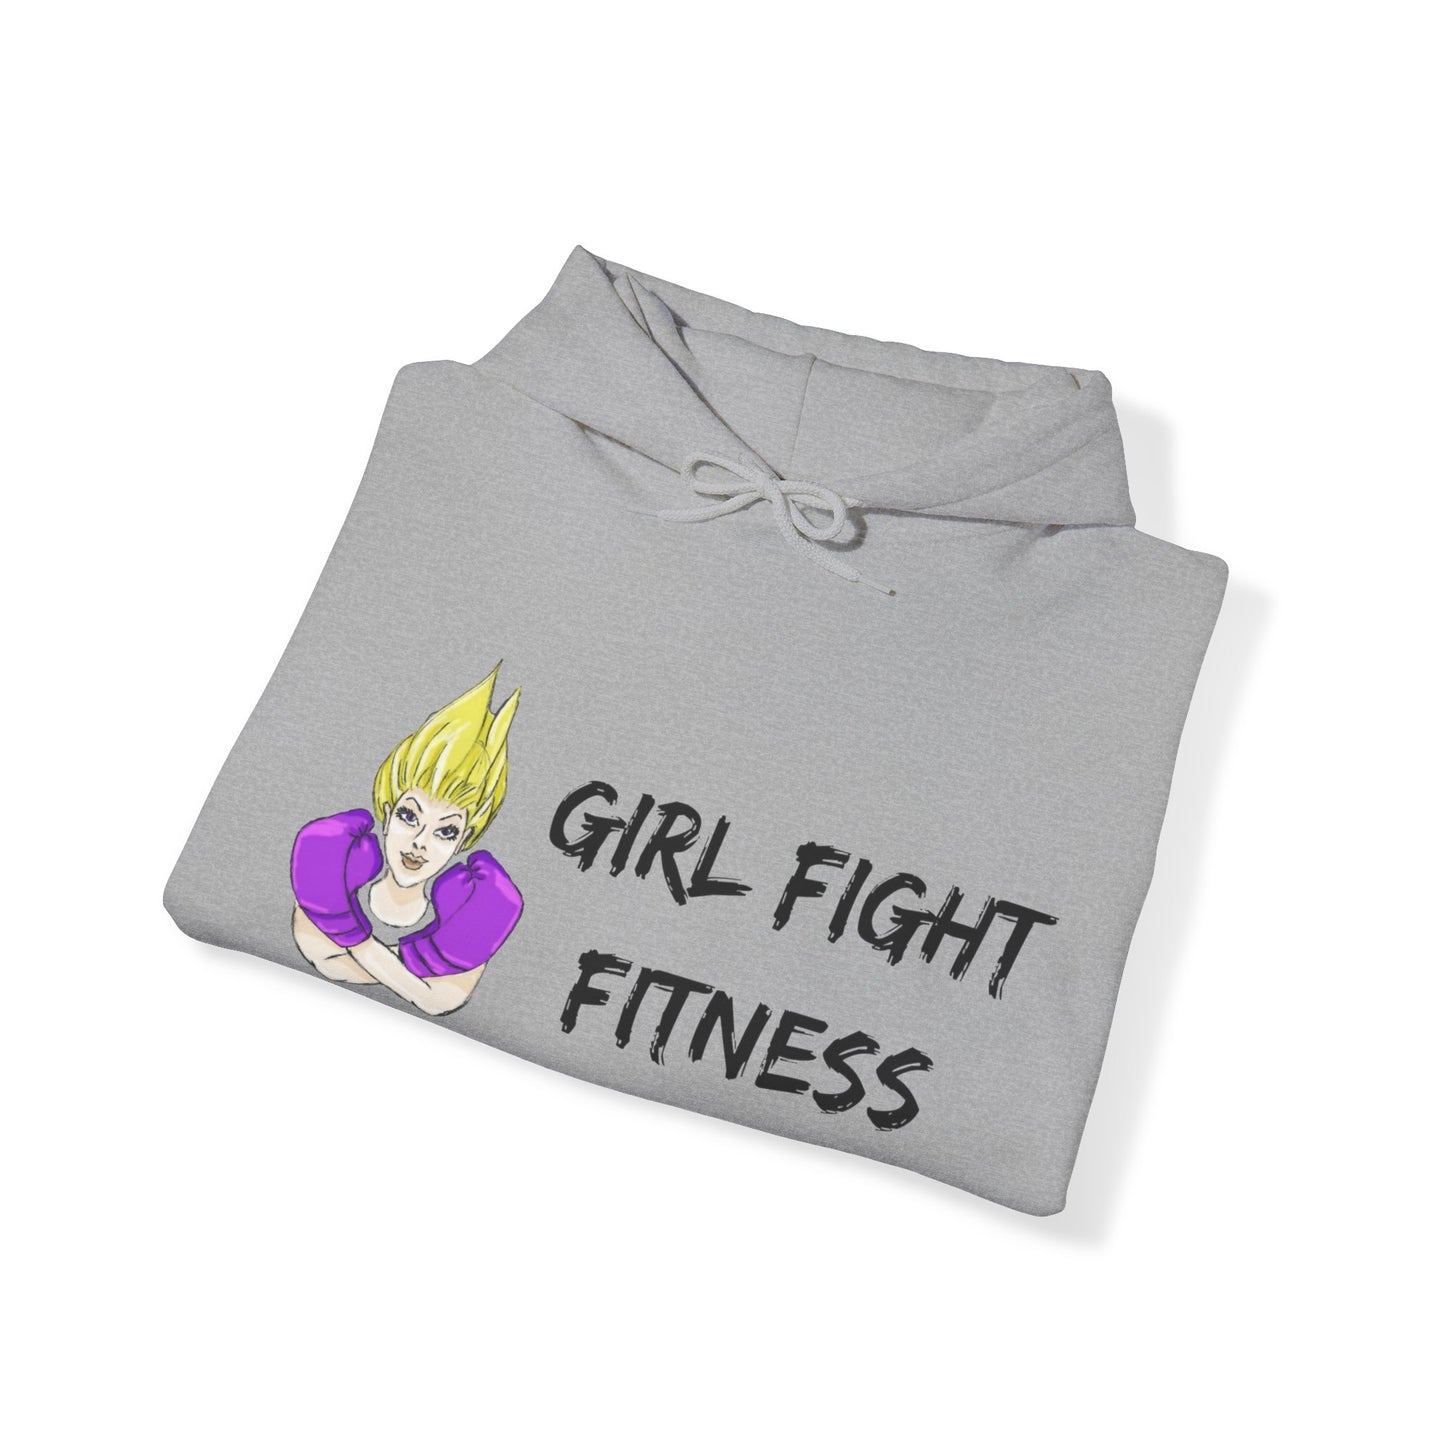 I FIGHT LIKE A GIRL Unisex Heavy Blend™ Hooded Sweatshirt